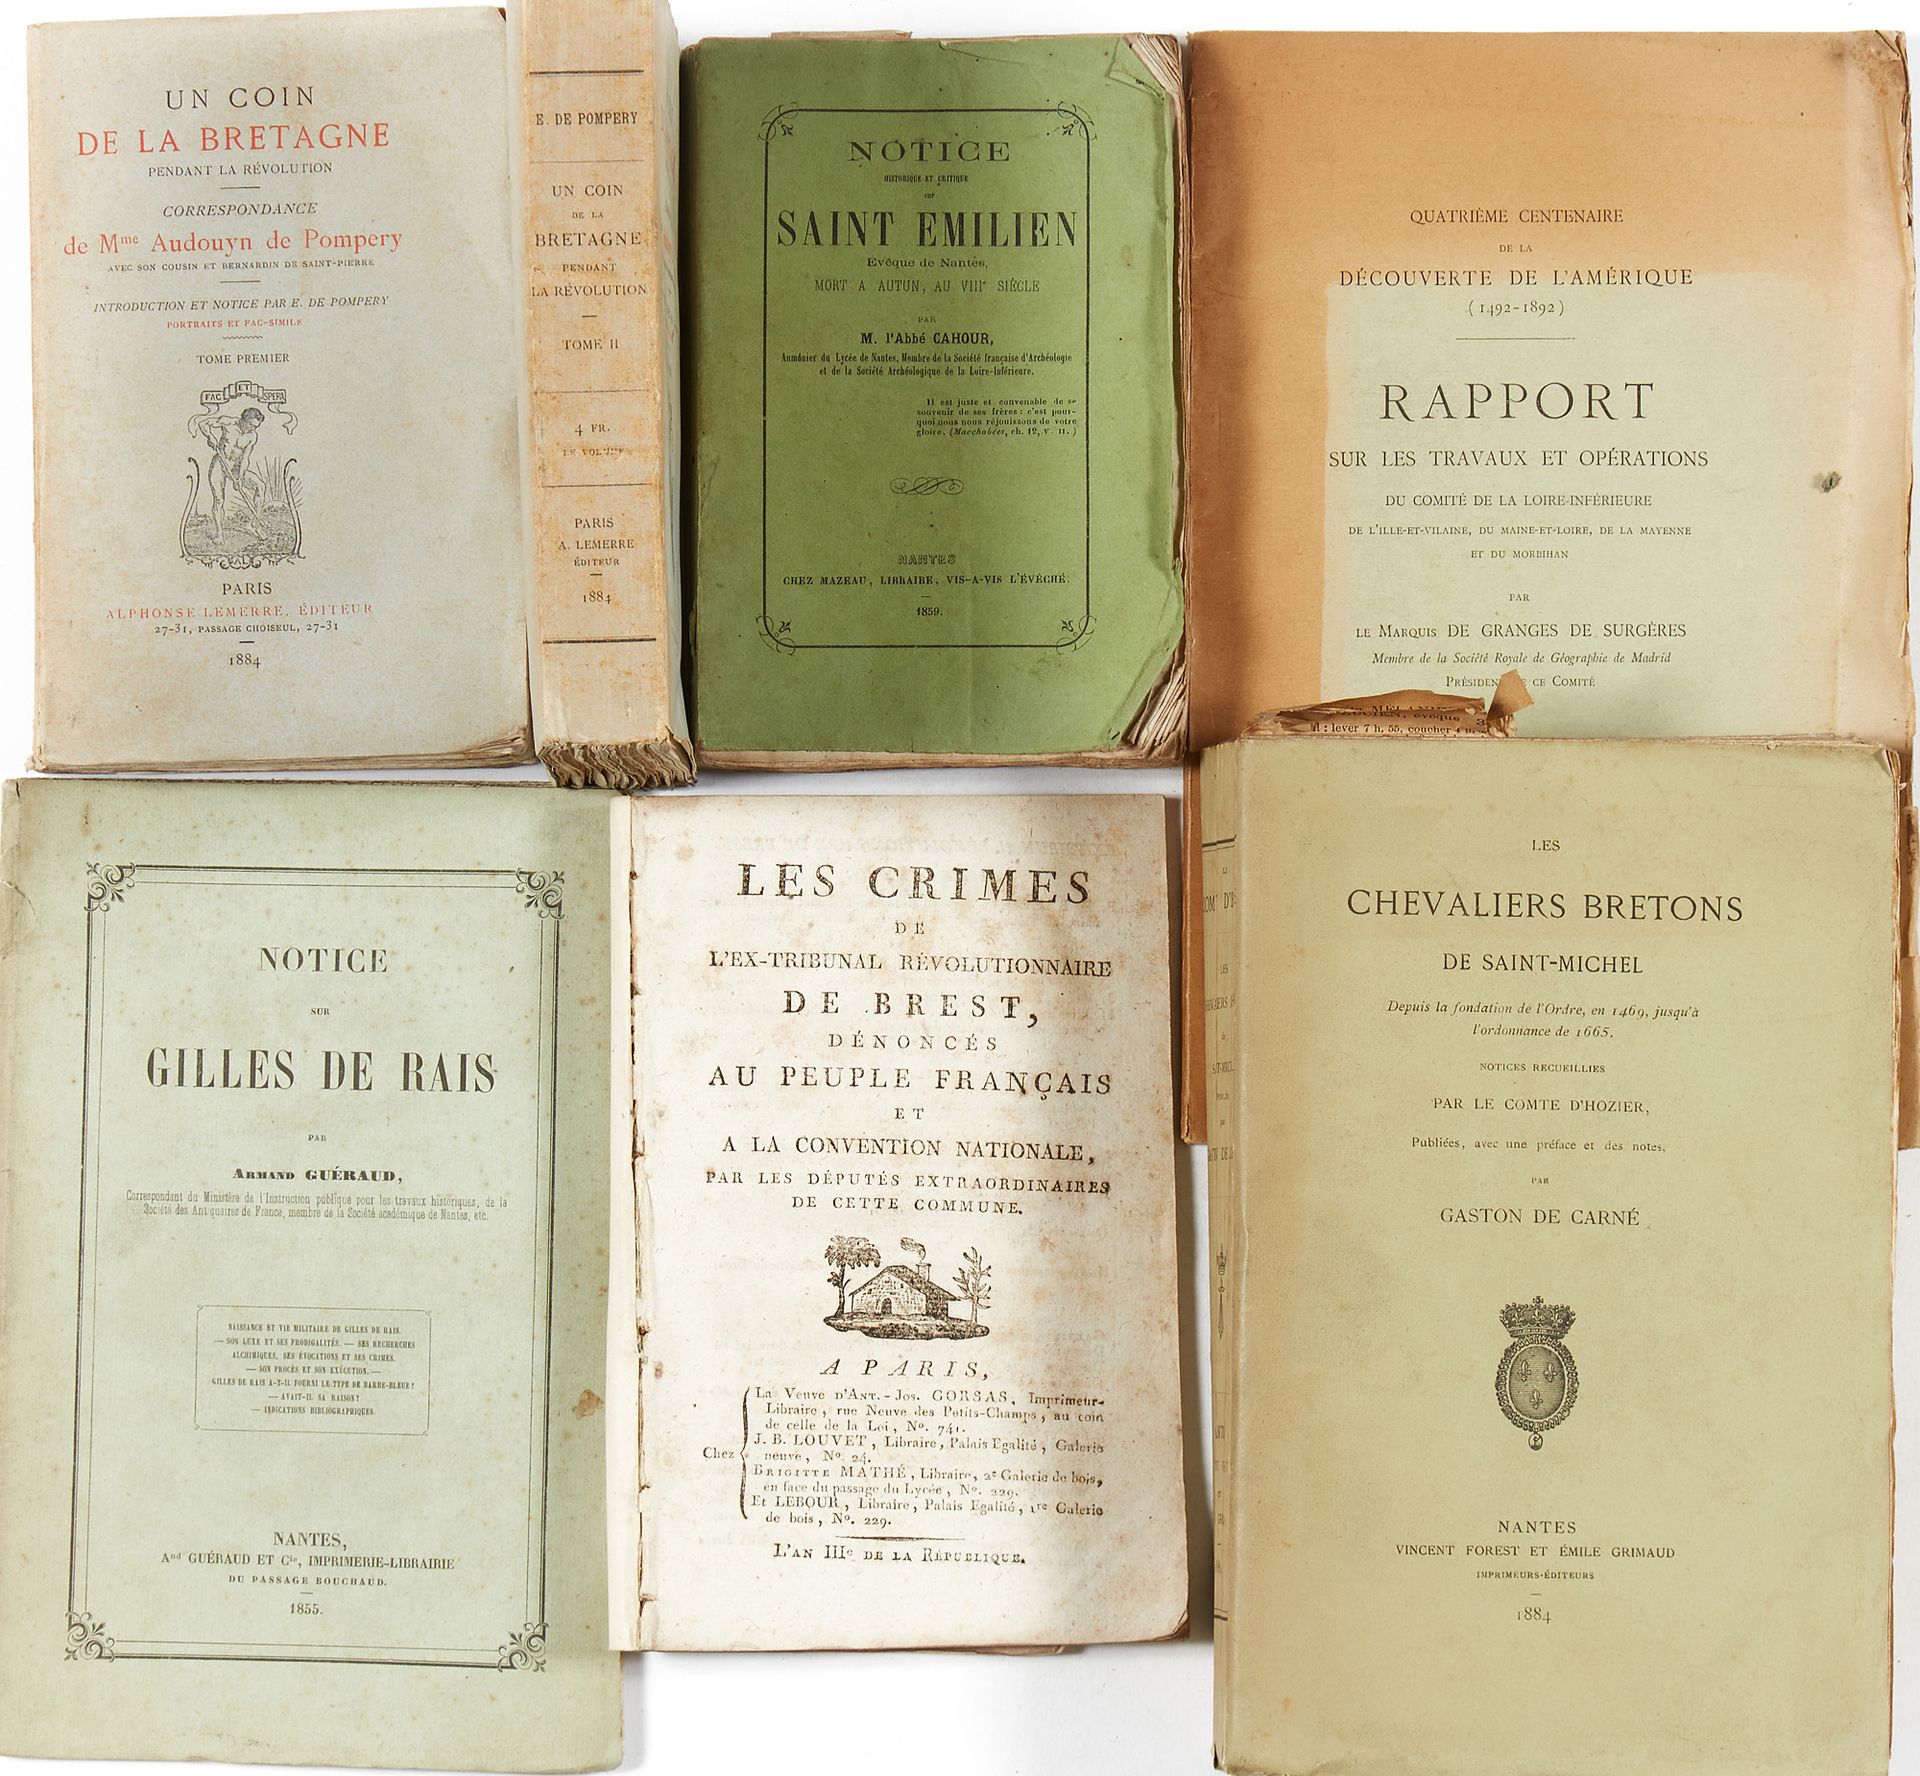 Null Storia della Bretagna. 1 serie di tascabili:
- TROUILLE, Jean-Nicolas, Les &hellip;